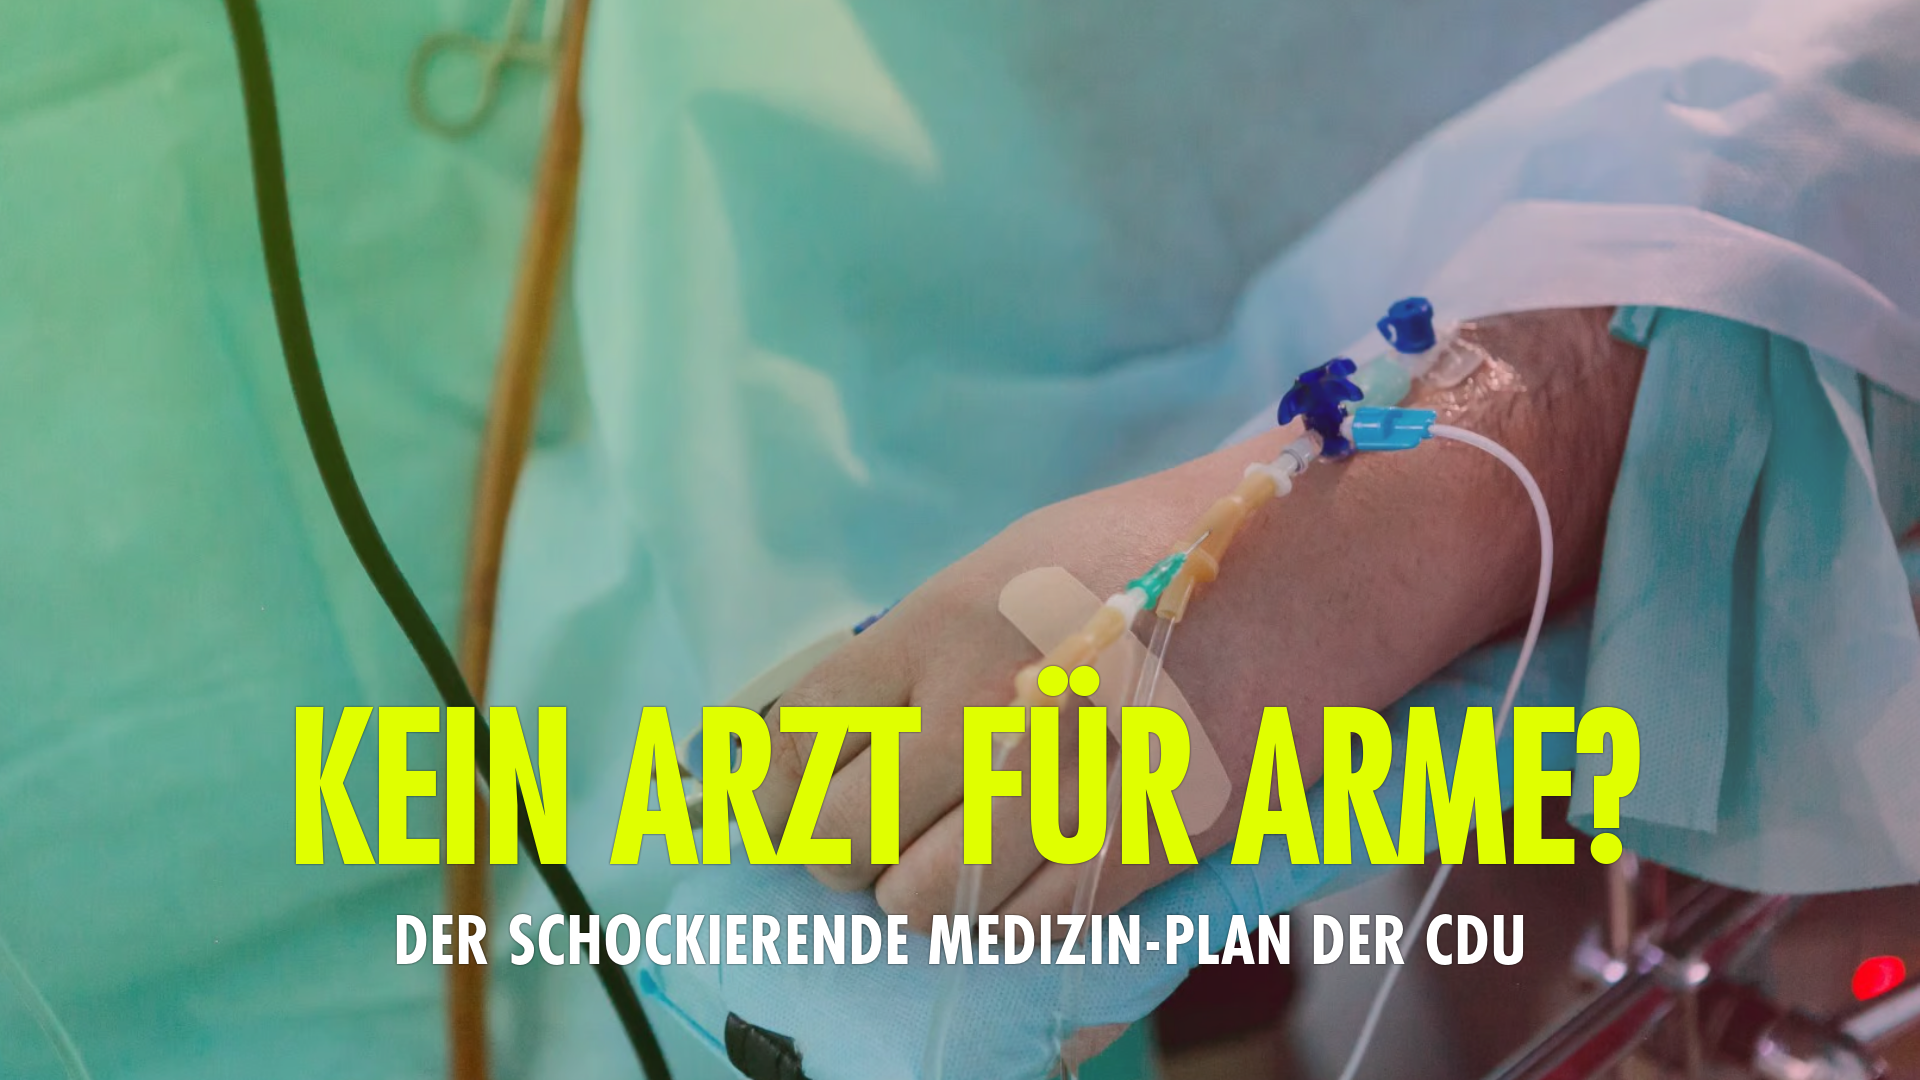 Kein Arzt für Arme? Der schockierende Medizin-Plan der CDU